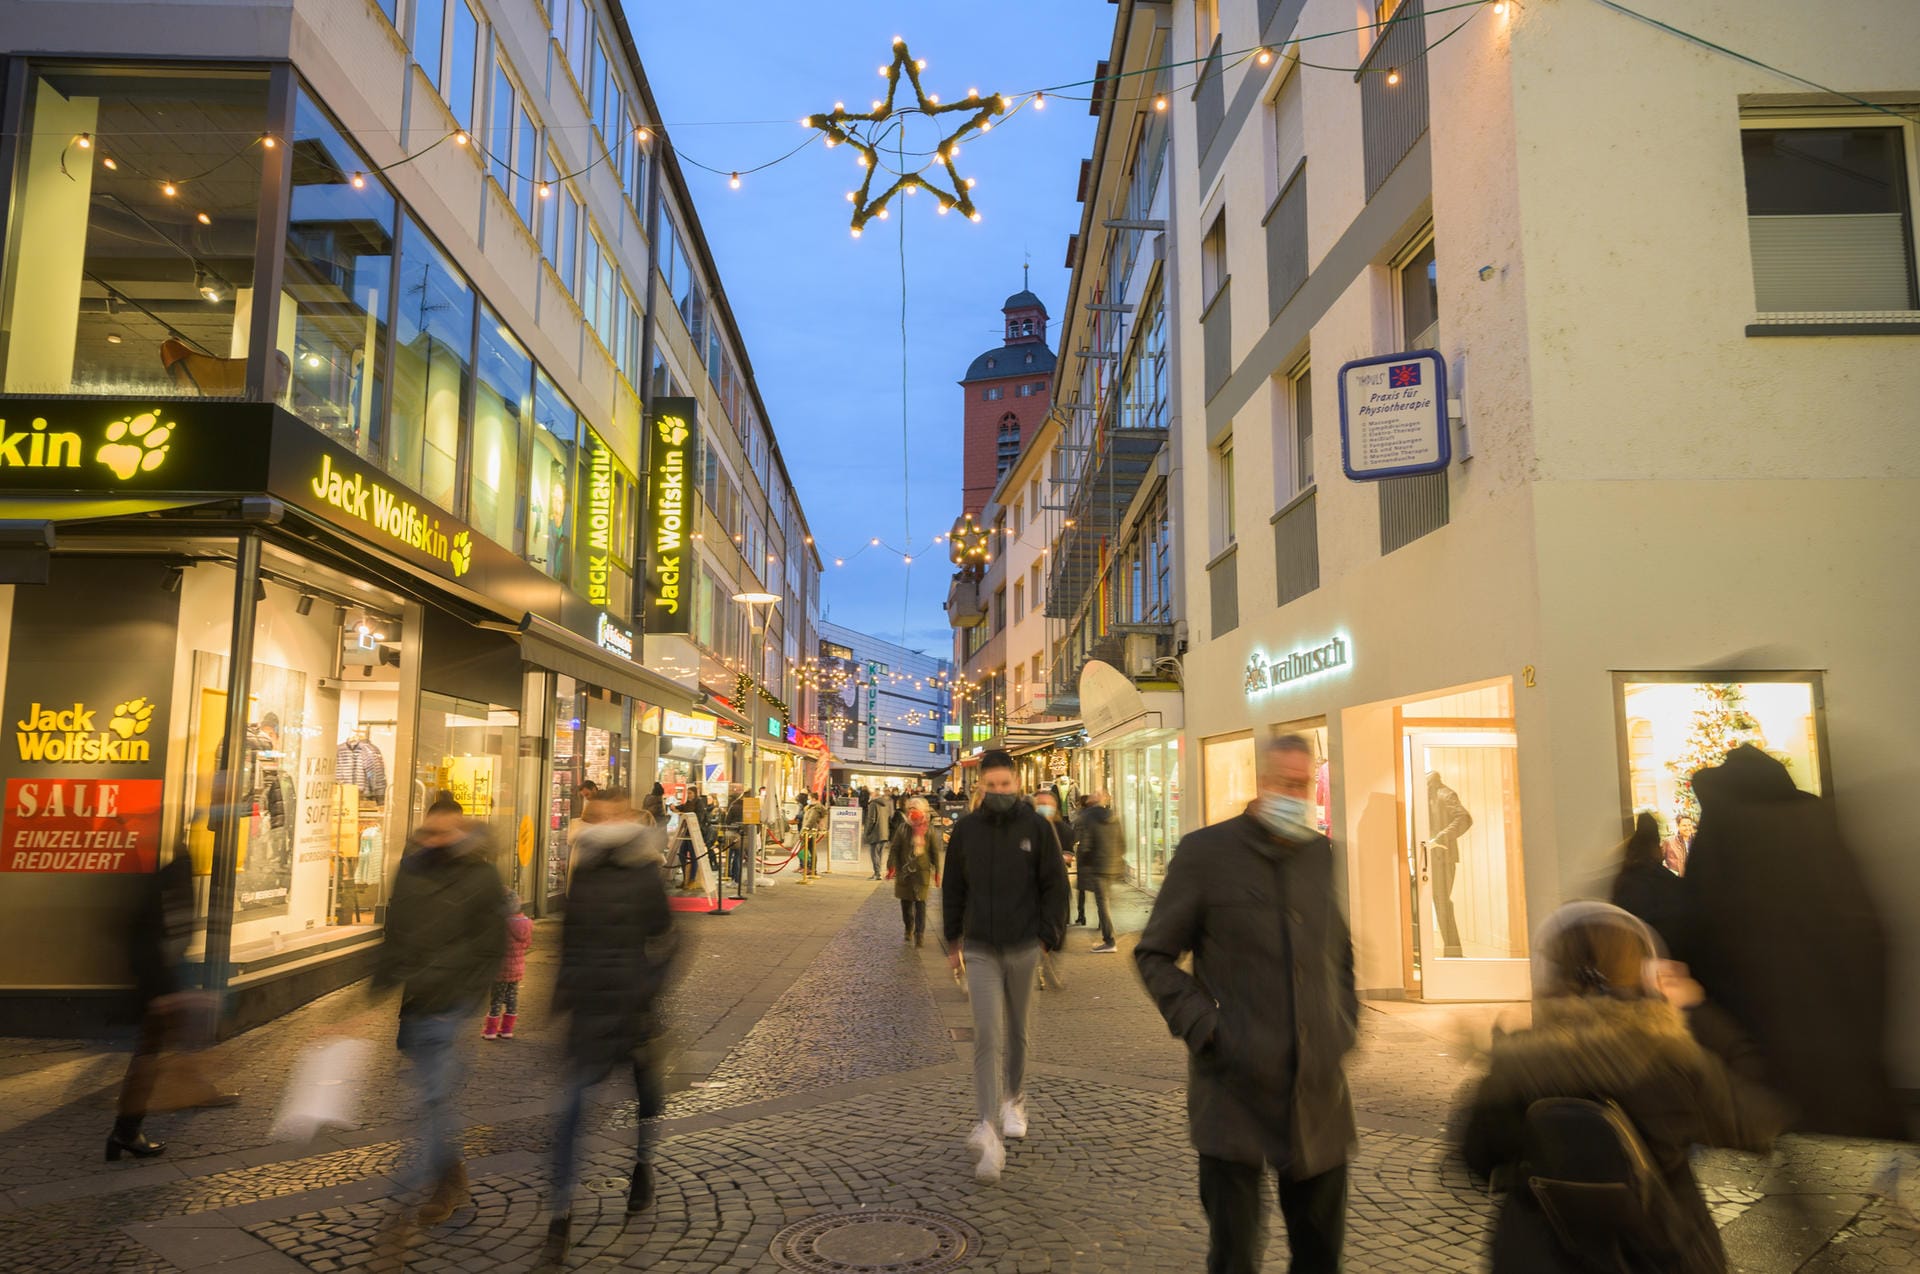 Am Abend vor dem Lockdown liefen Mainzer durch die Schusterstraße für die letzten Besorgungen vor Weihnachten: Das Geschenkeshopping am 23. Dezember fällt dieses Jahr aus.